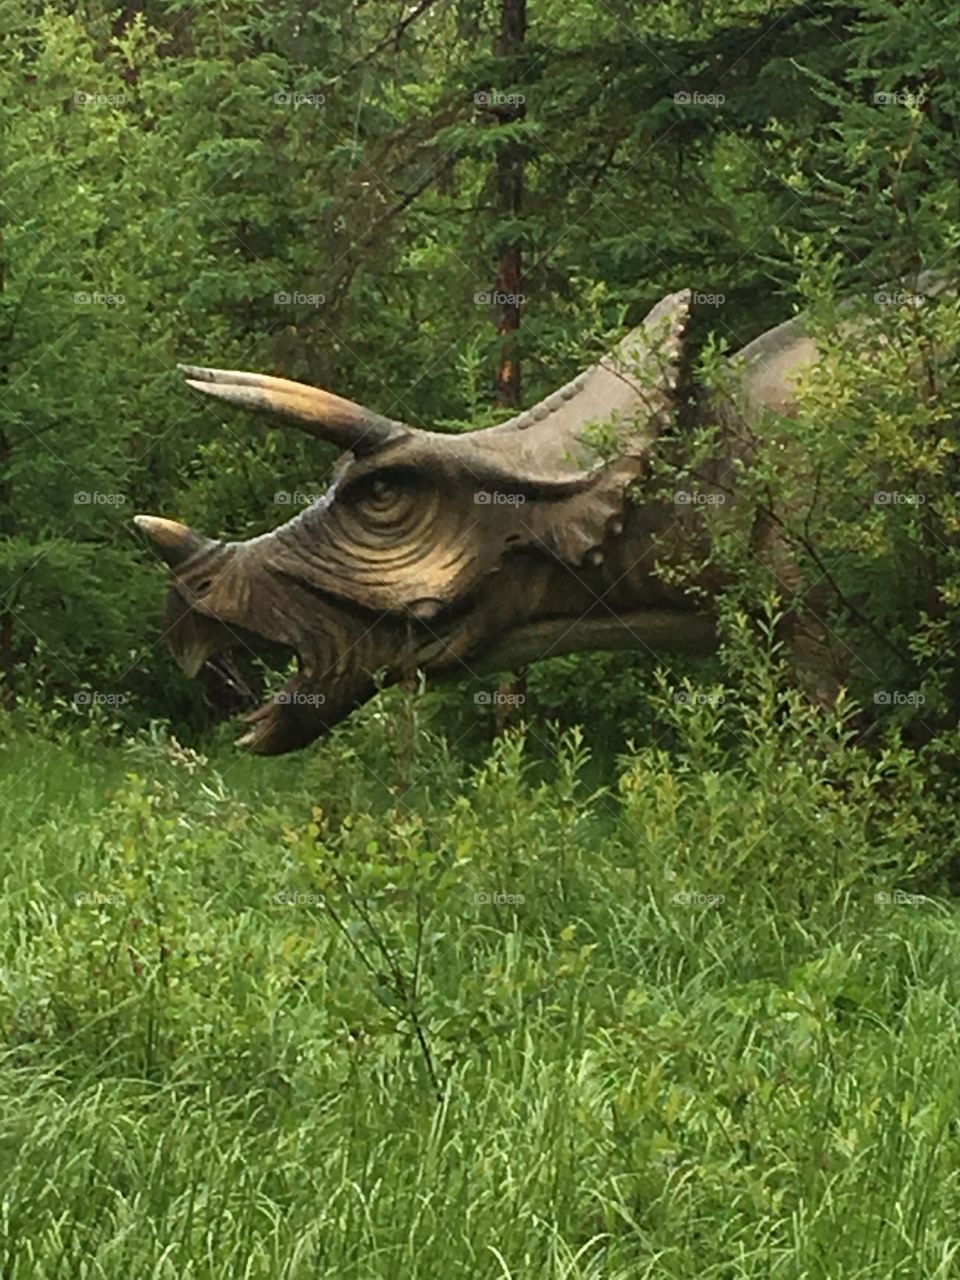 Triceratops at Jurado forest 